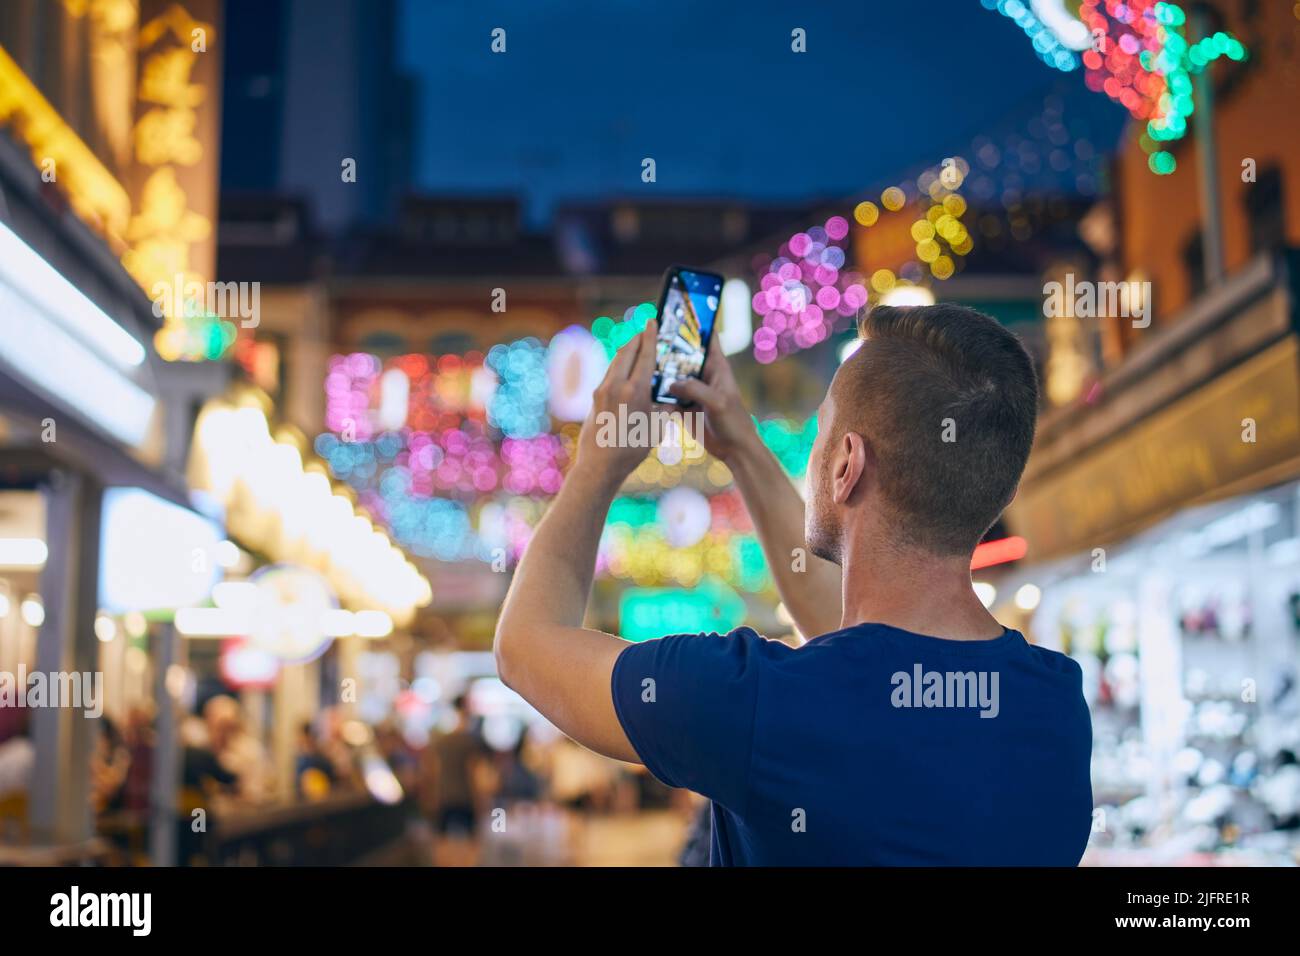 Rückansicht des Mannes beim Fotografieren mit dem Mobiltelefon auf einer farbenfrohen Straße. Tourist in Chinetown in Singapur. Stockfoto